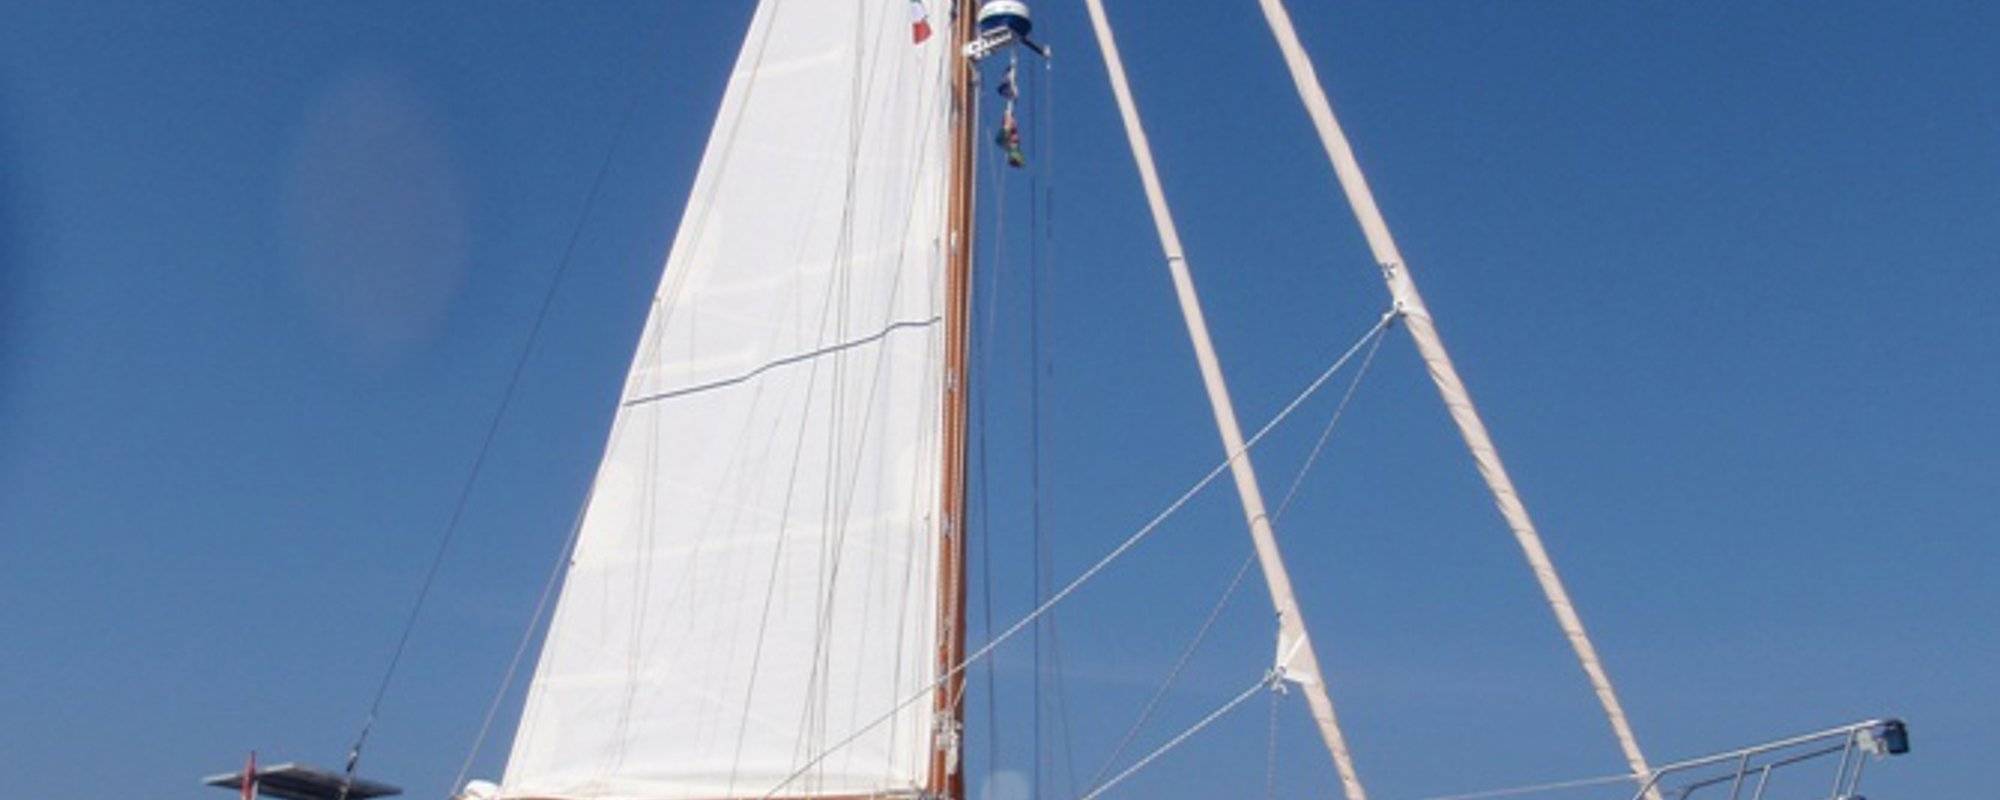 Sailing boat Muendo - equipment